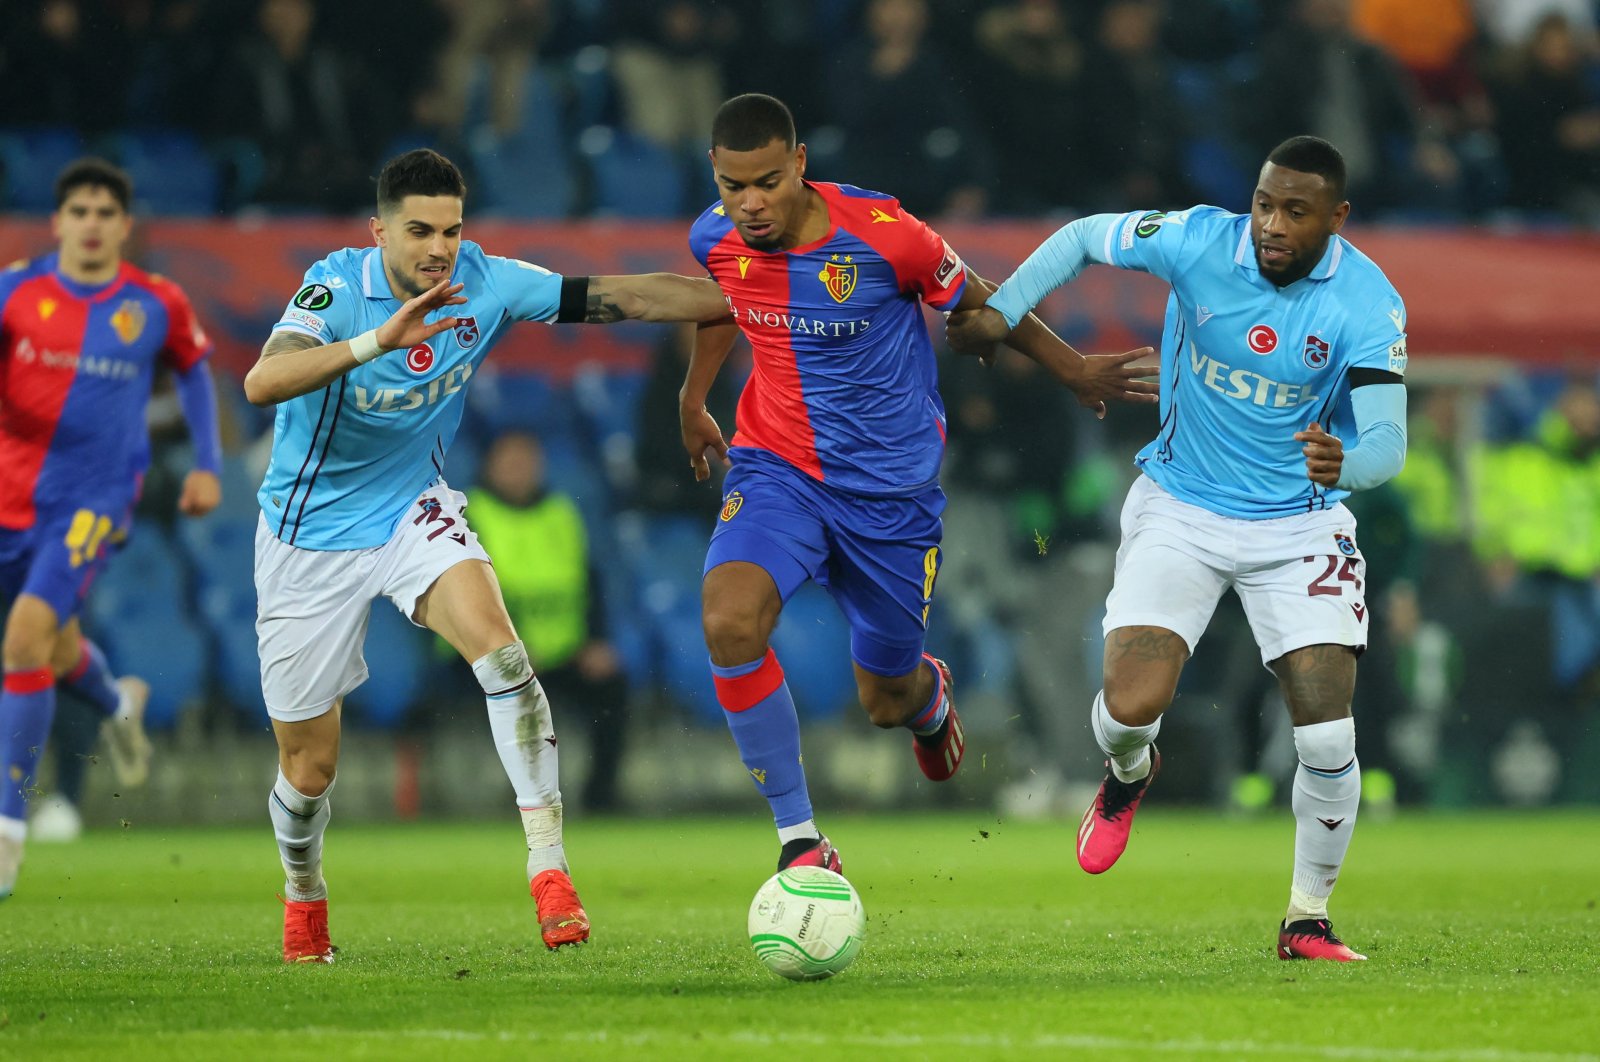 Kutukan tandang Trabzonspor berlanjut setelah kekalahan di Basel